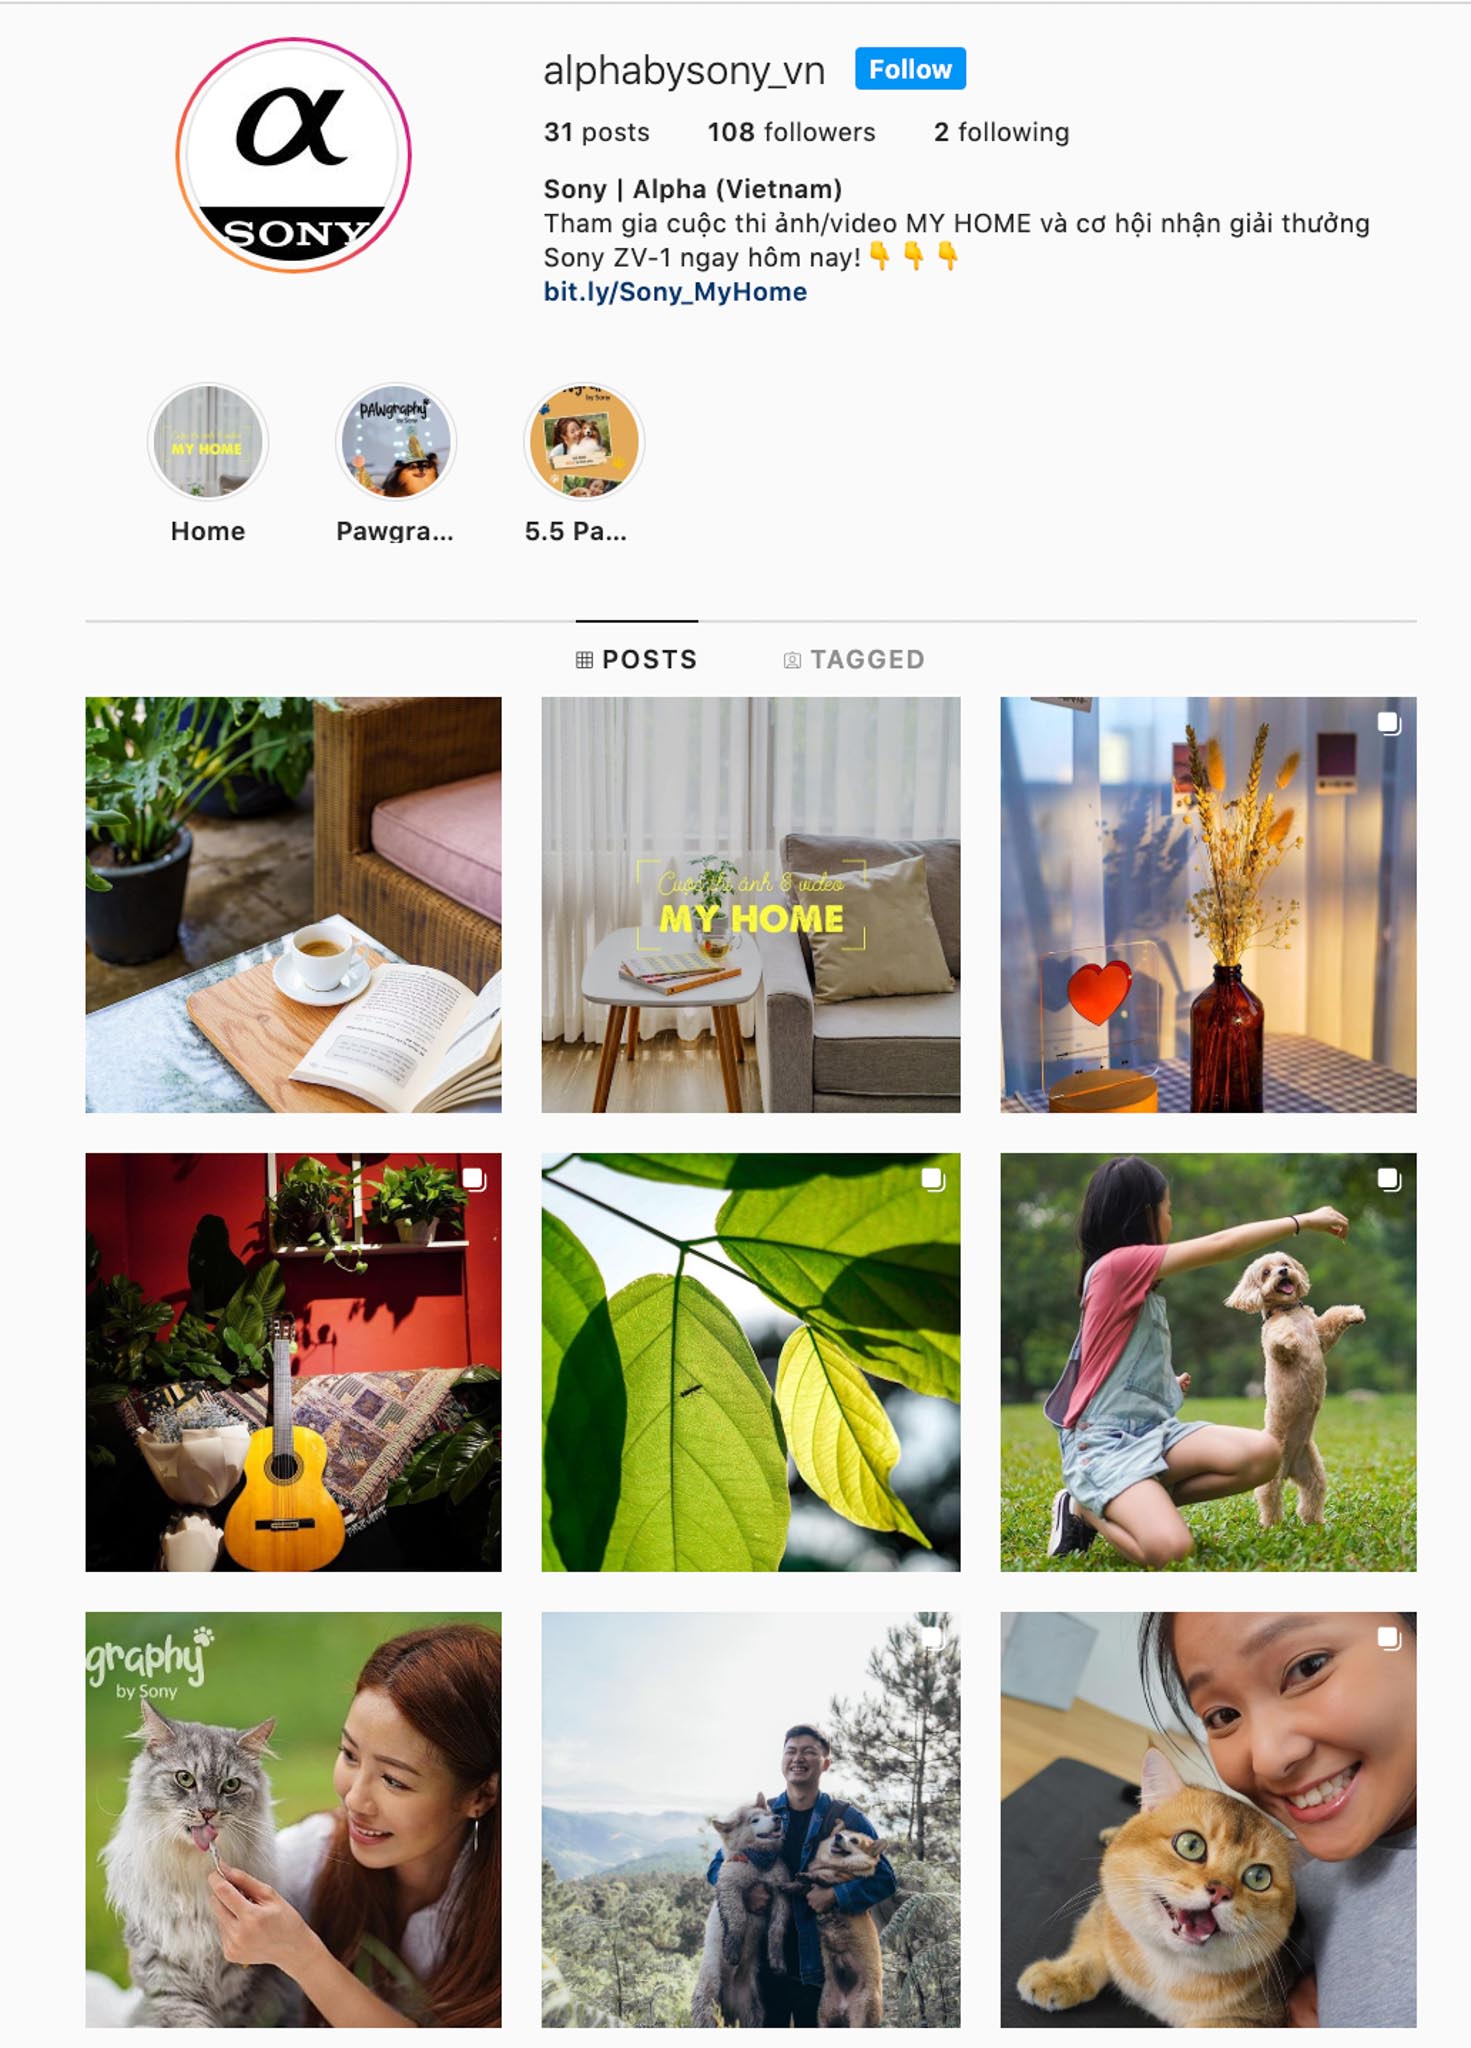 Sony Việt Nam ra mắt trang Sony Alpha trên Instagram, công bố cuộc thi “My home” với nhiều giải thưởng hấp dẫn